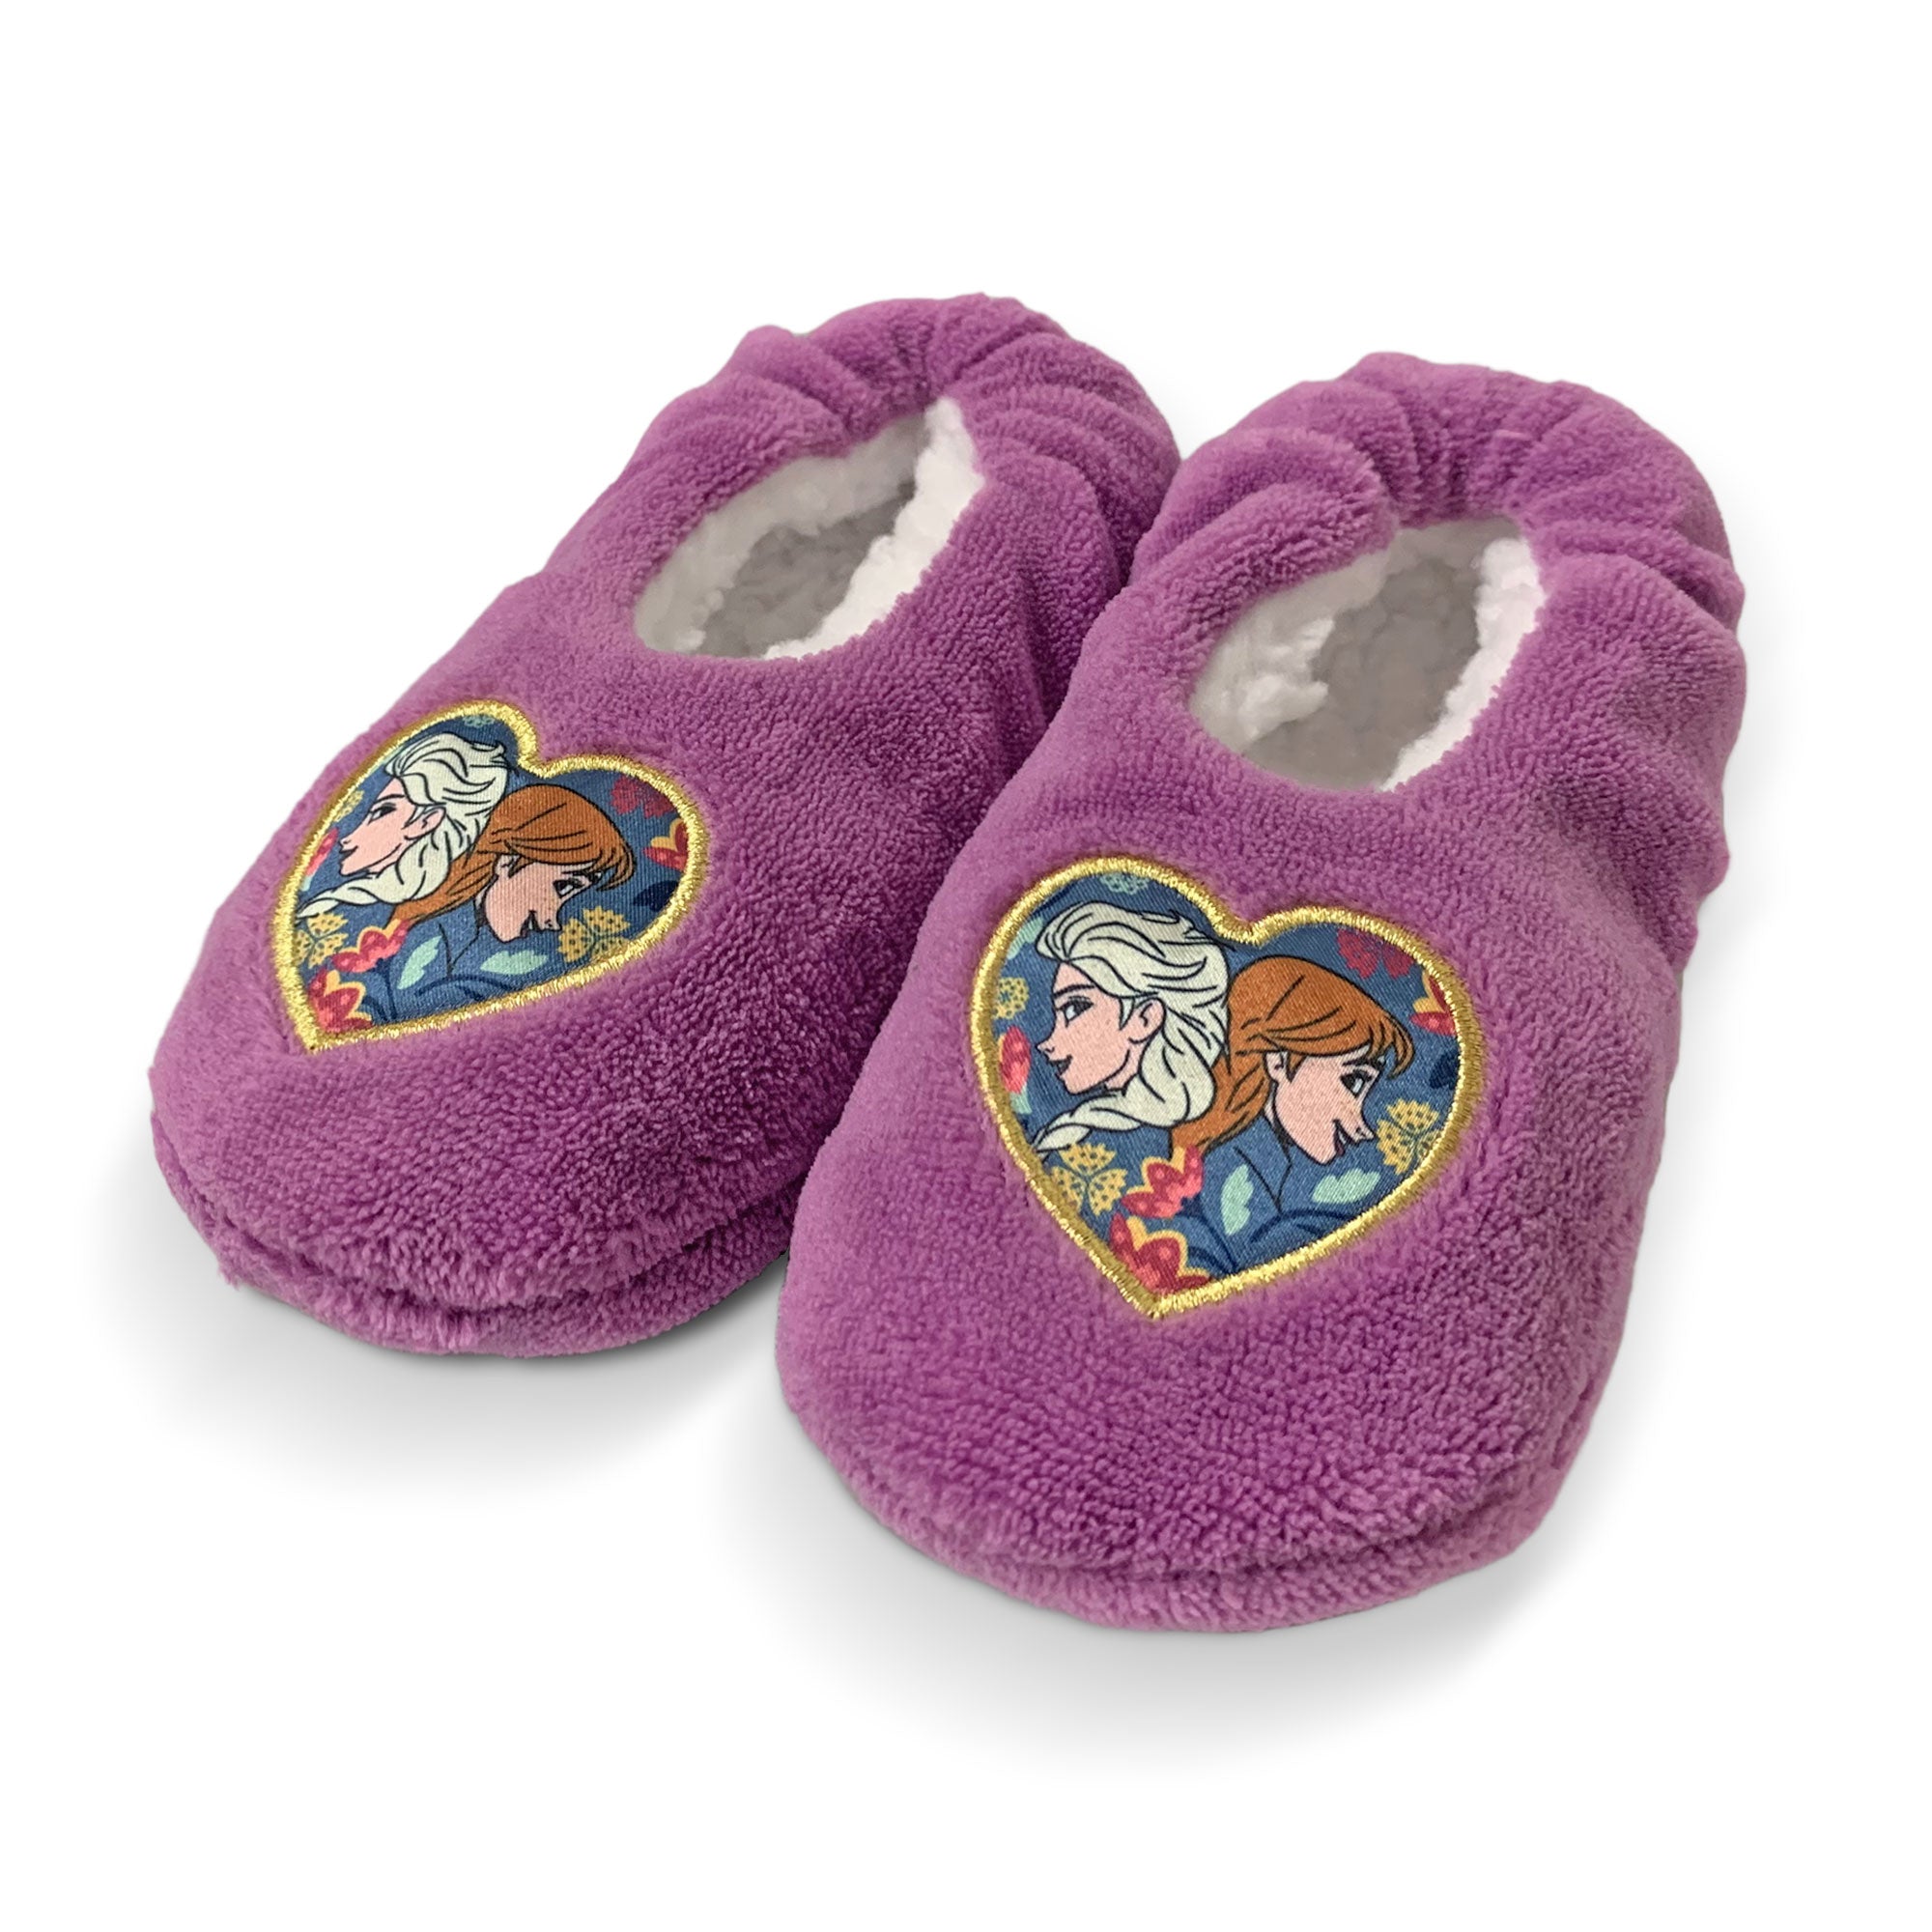 Pantofole invernali chiuse Disney Frozen antiscivolo peluche bambina 5899